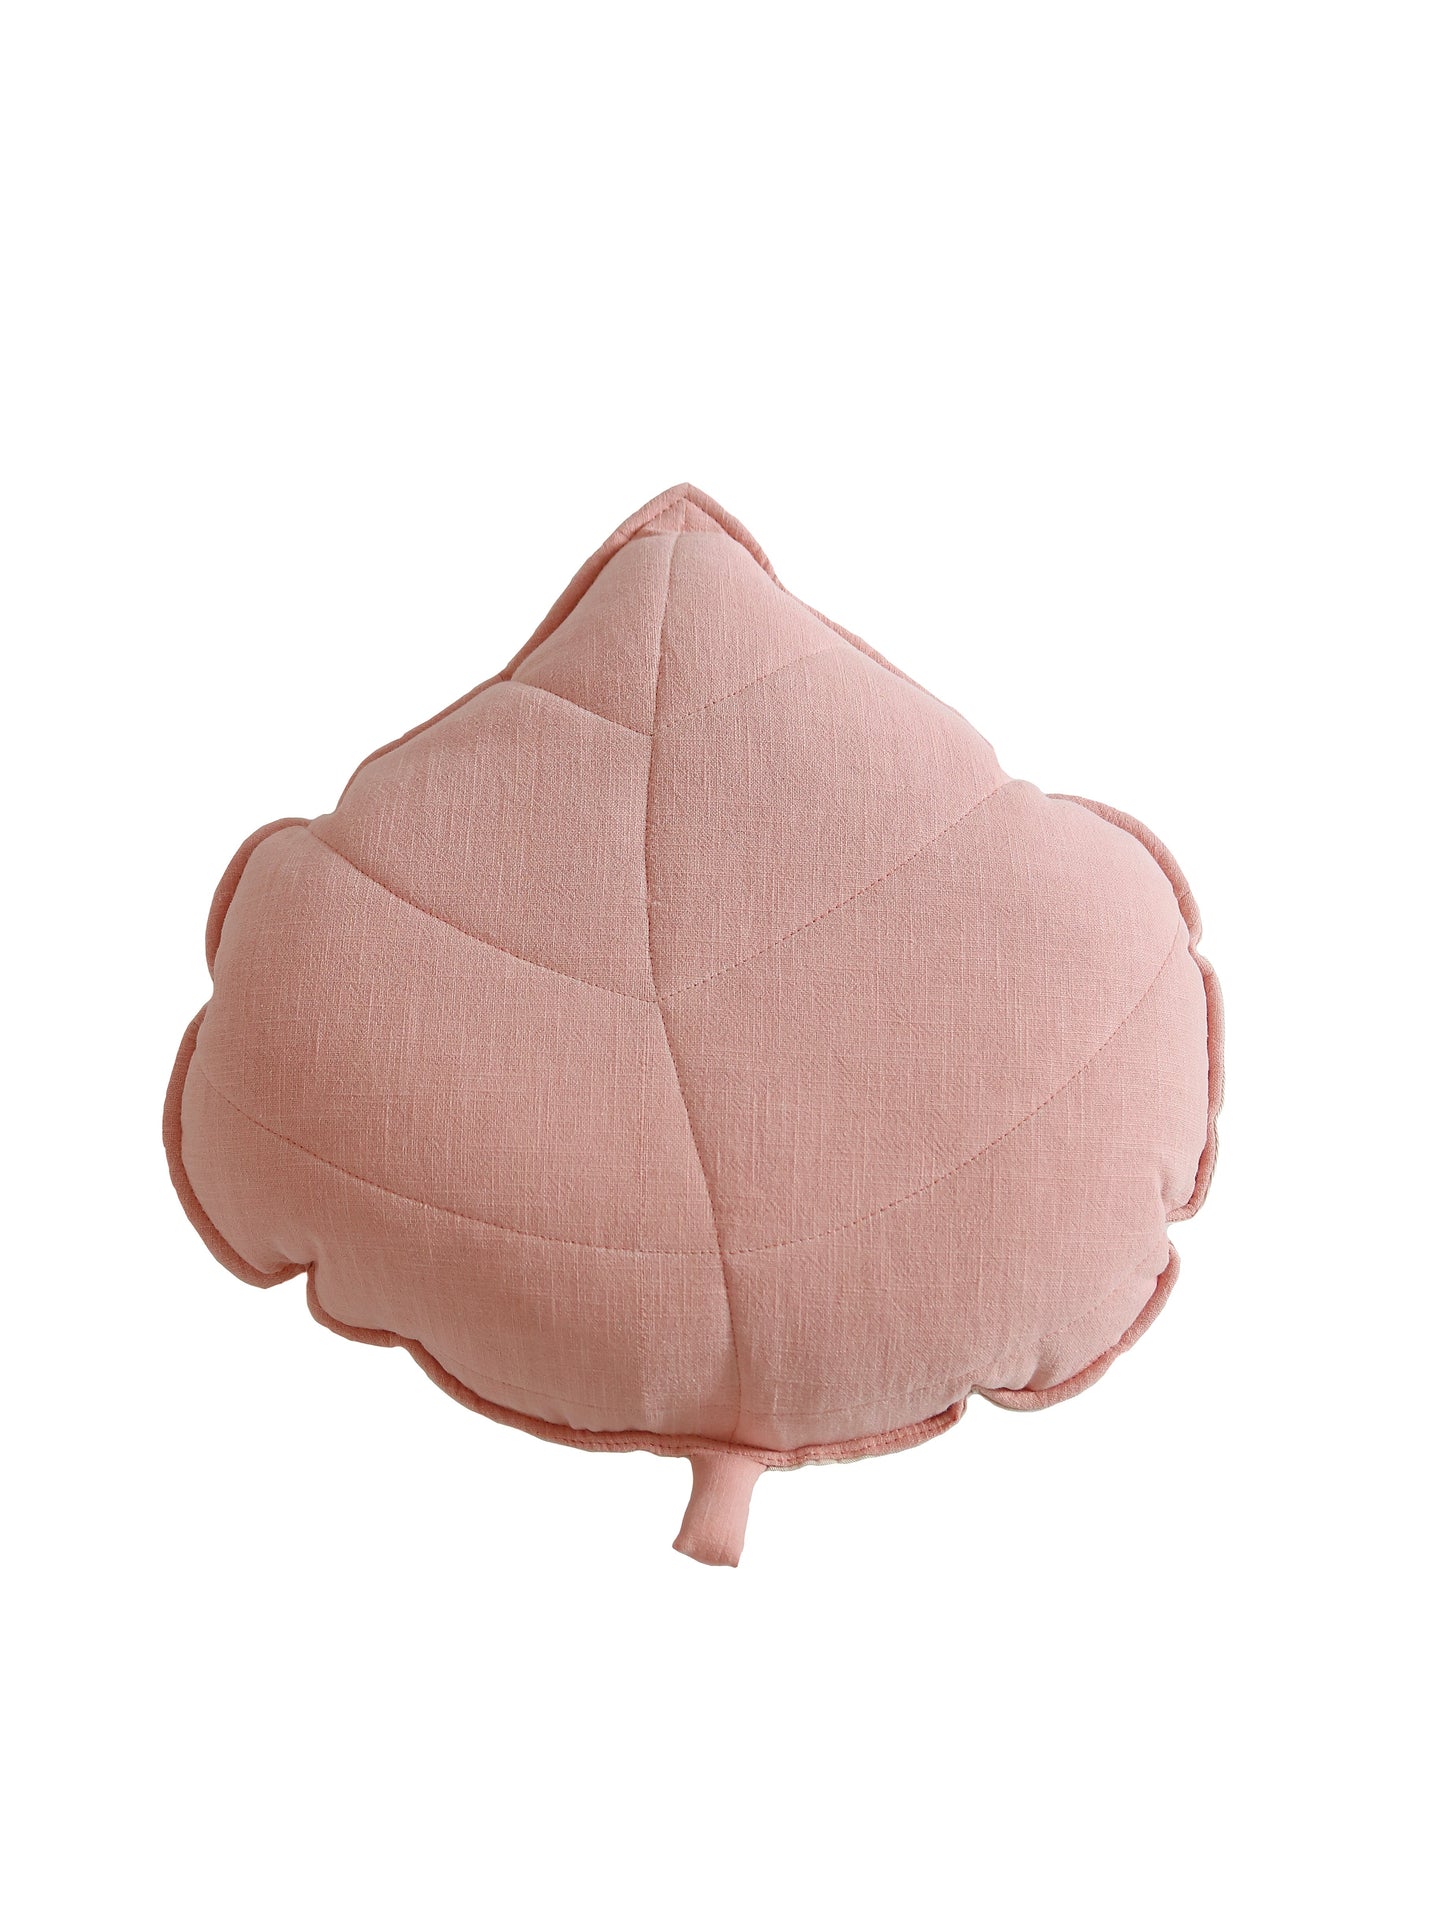 Linen “Powder Pink” Leaf Pillow